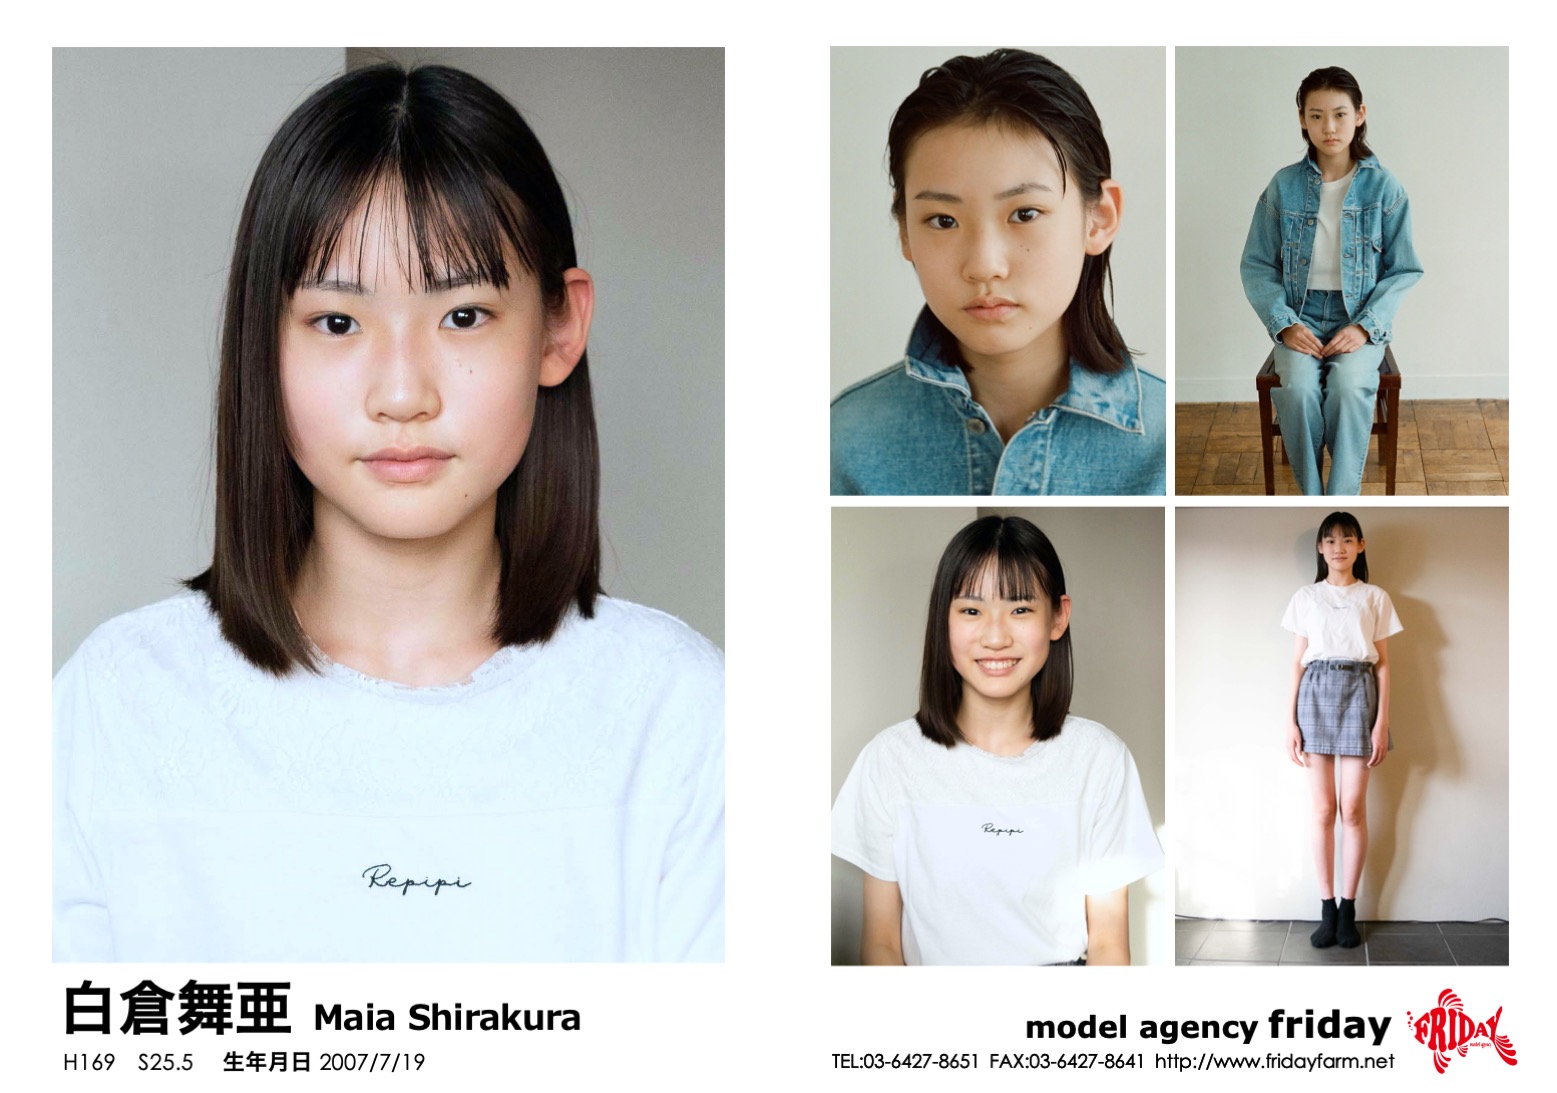 白倉 舞亜 - Maia Shirakura | model agency friday